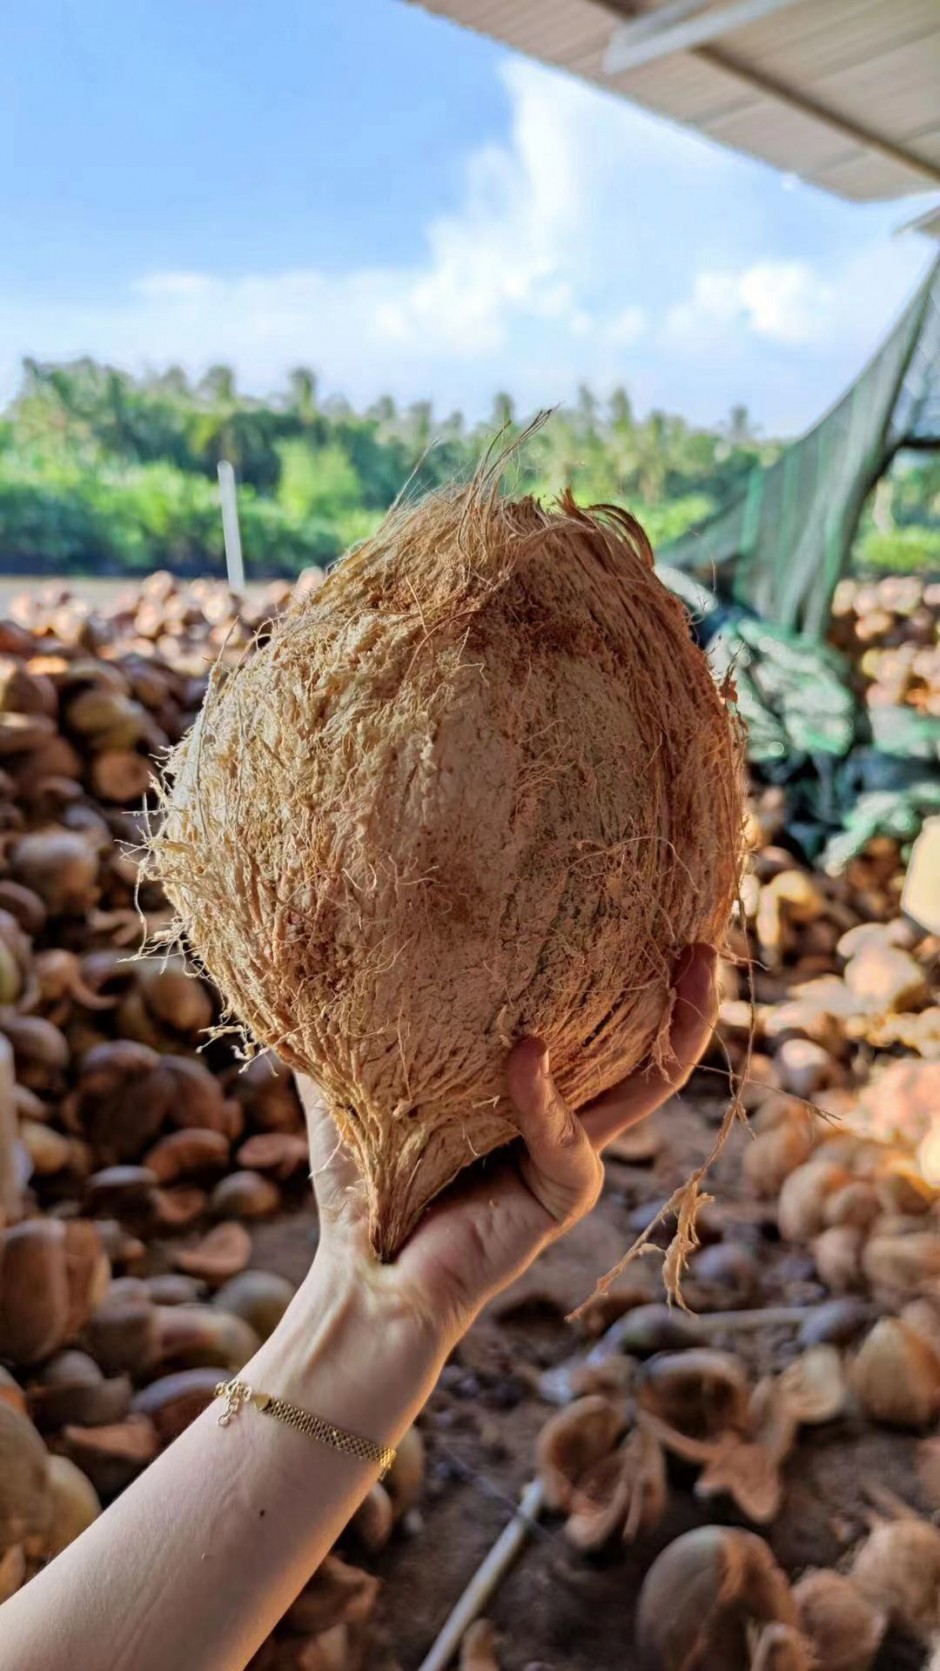 越南的老椰子